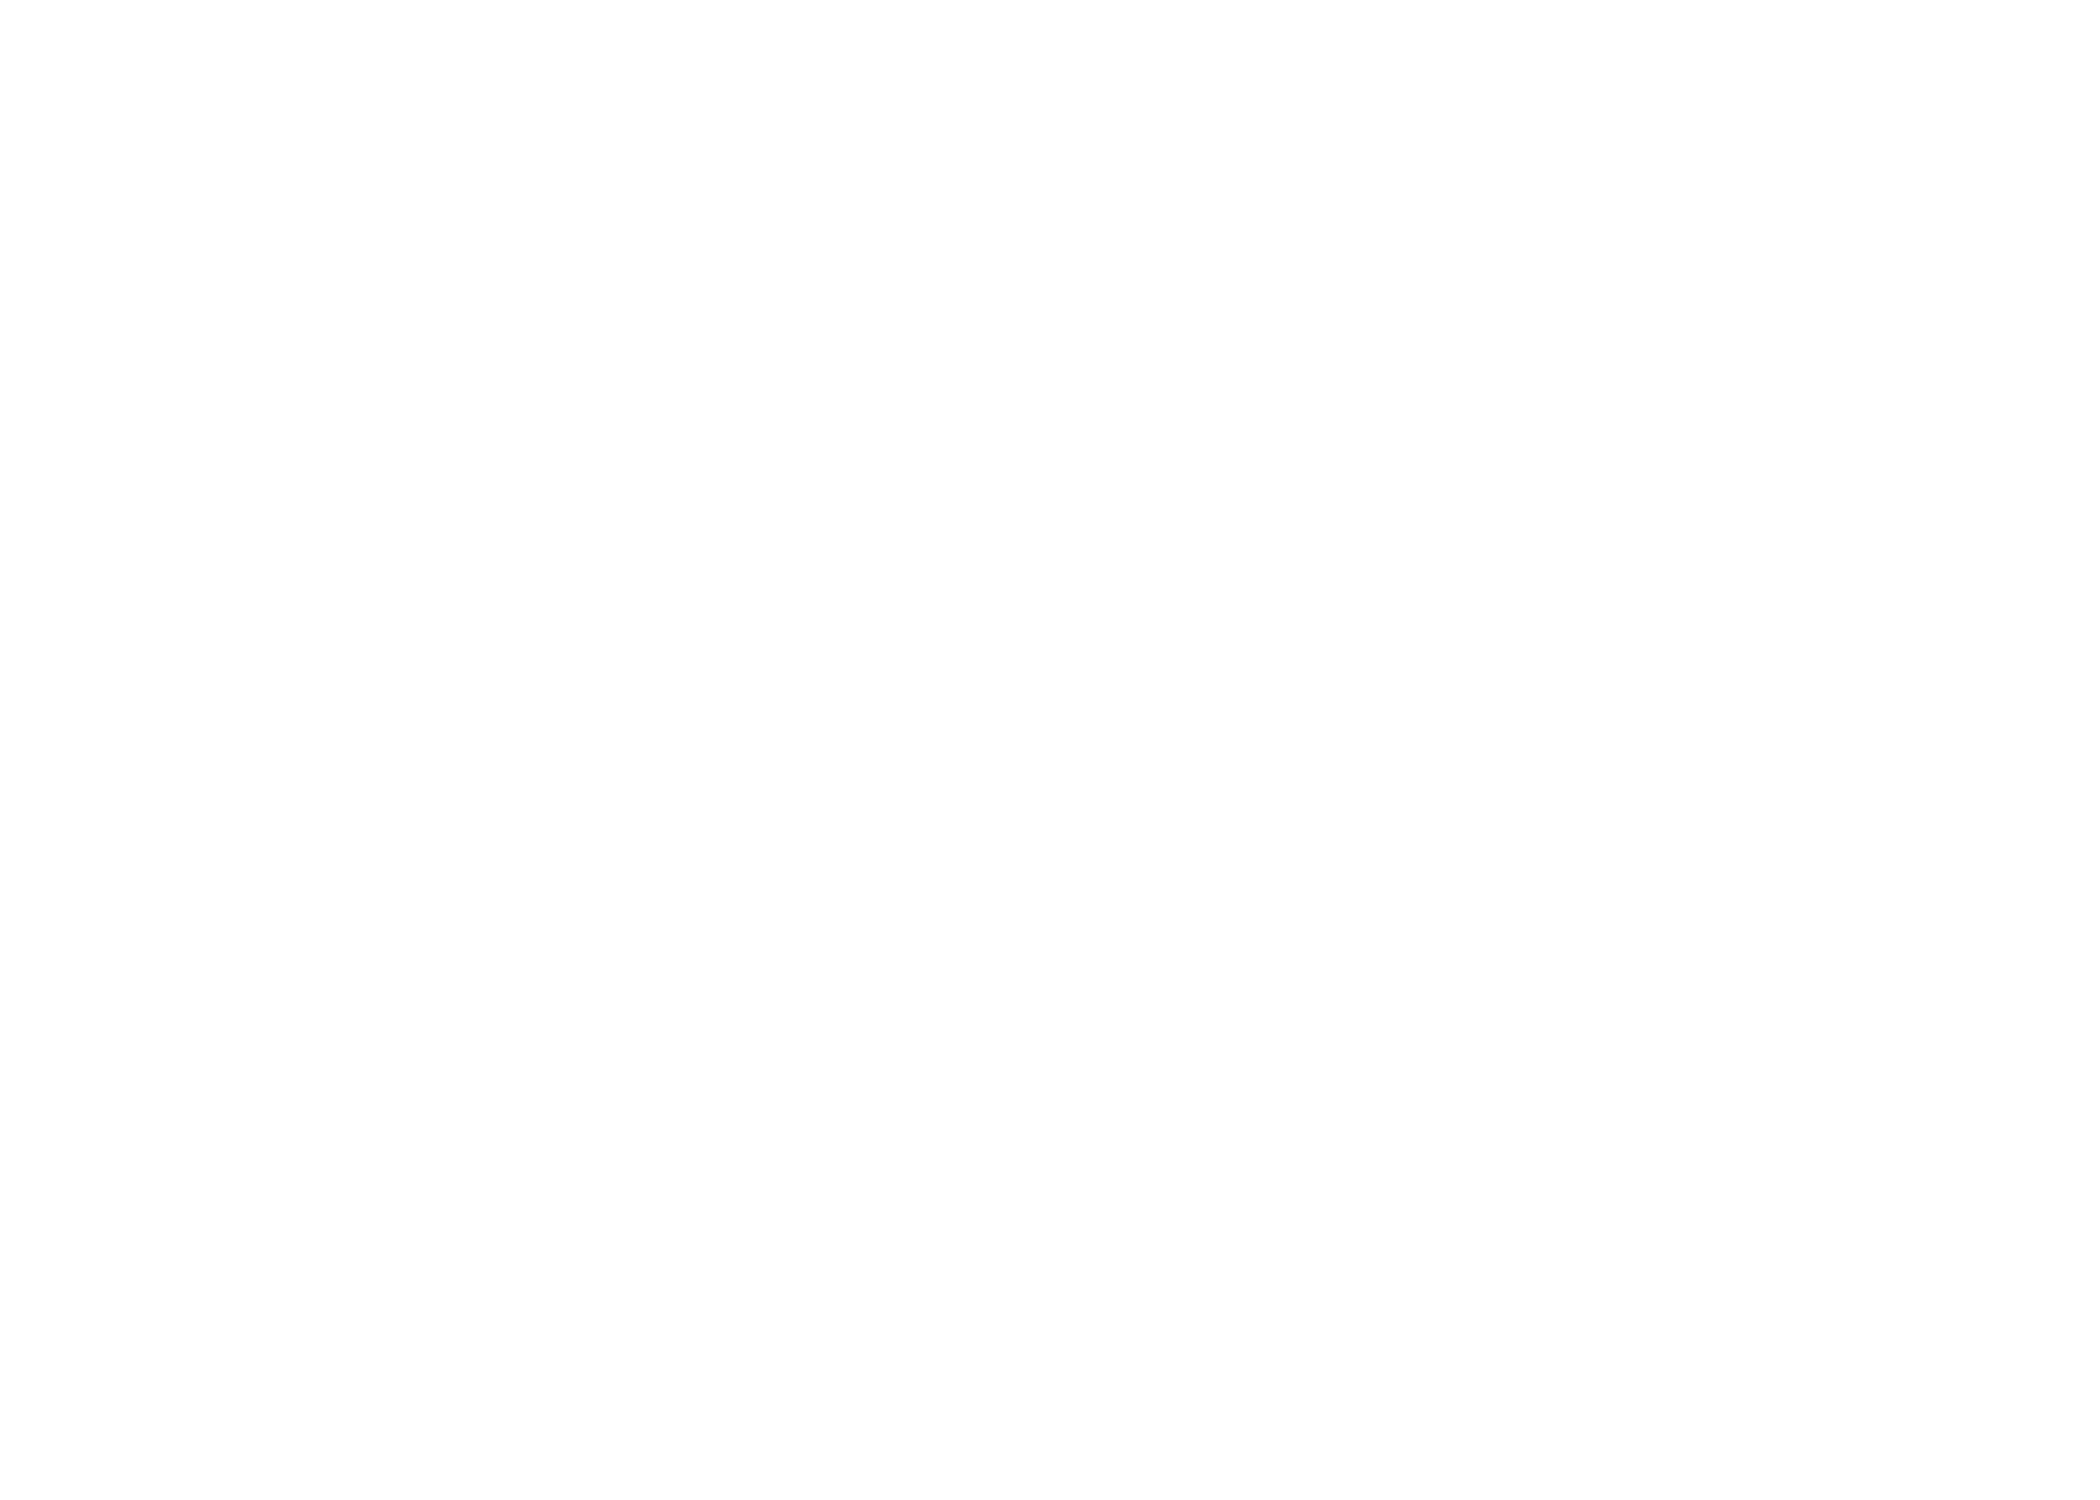 Reading Alloys company logo